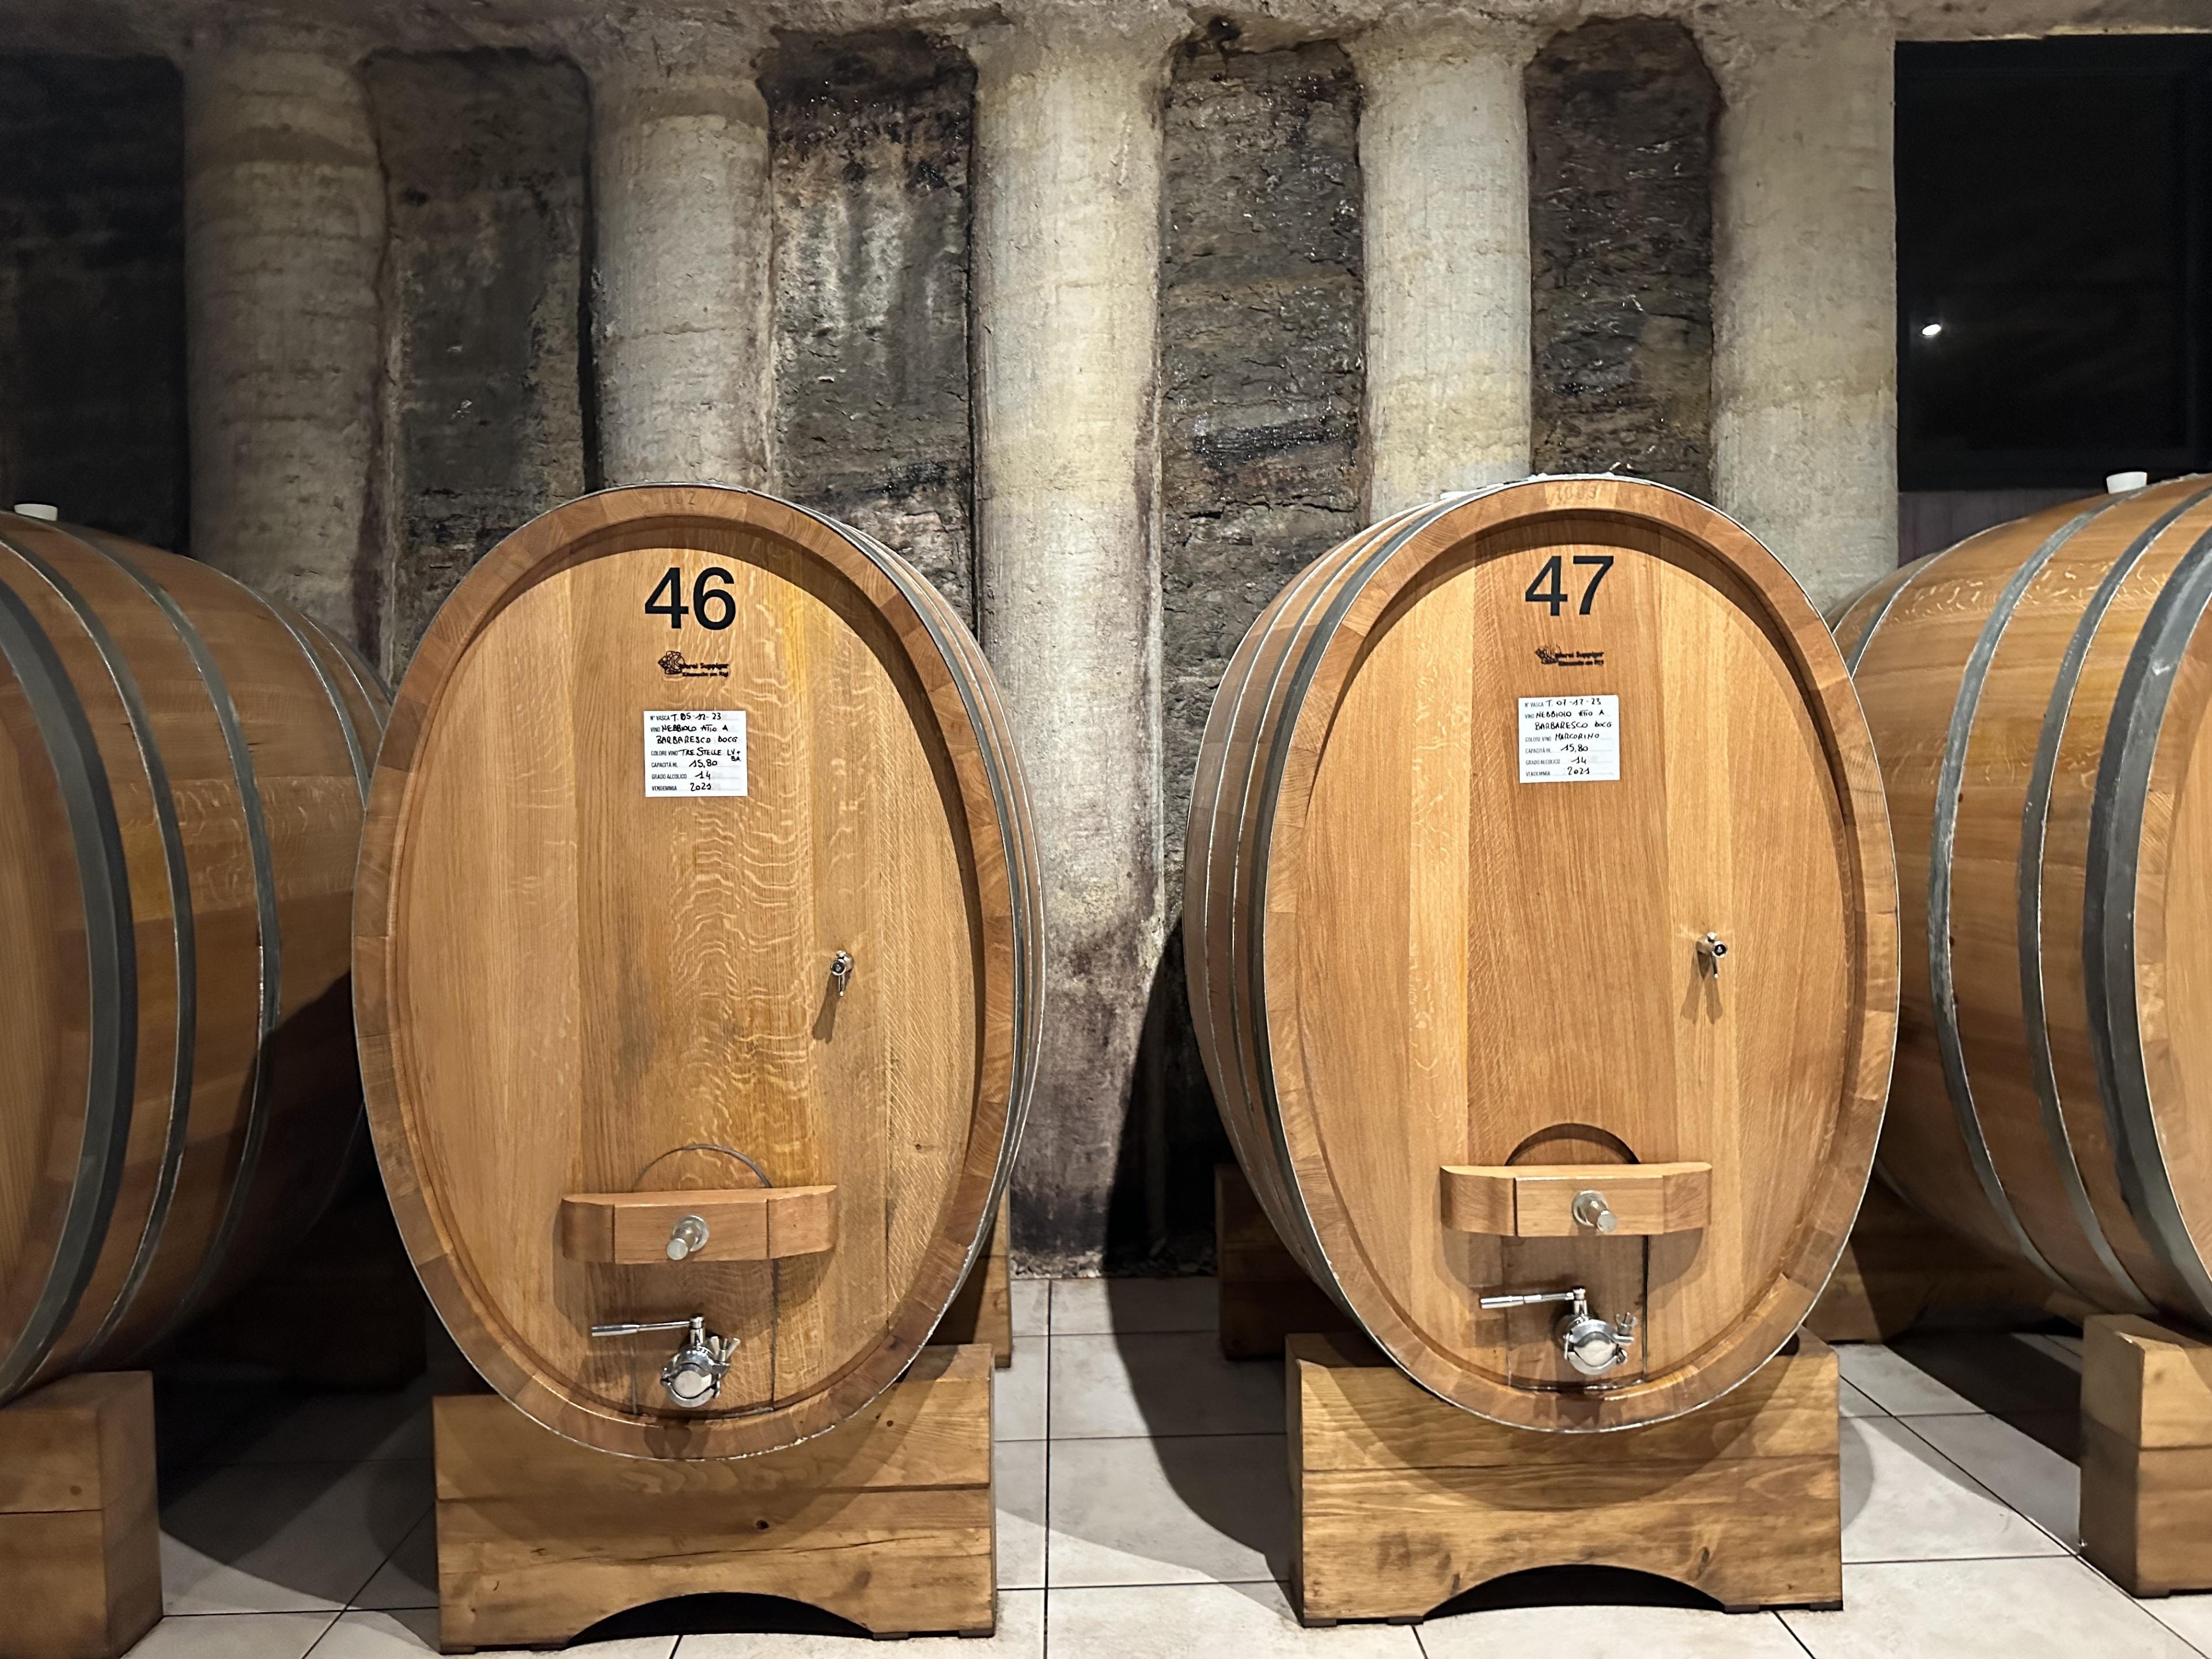 Wine Barrels in an Italian winery